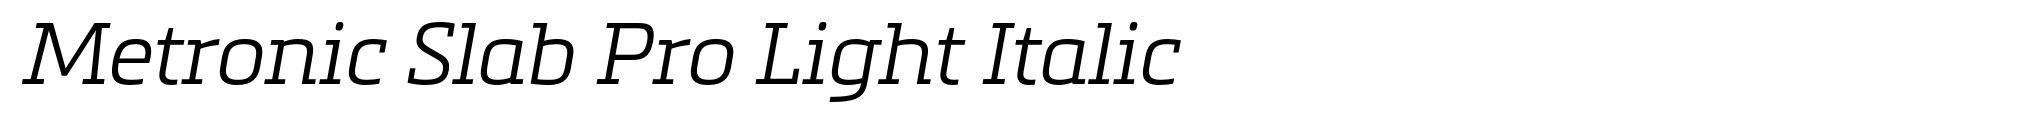 Metronic Slab Pro Light Italic image